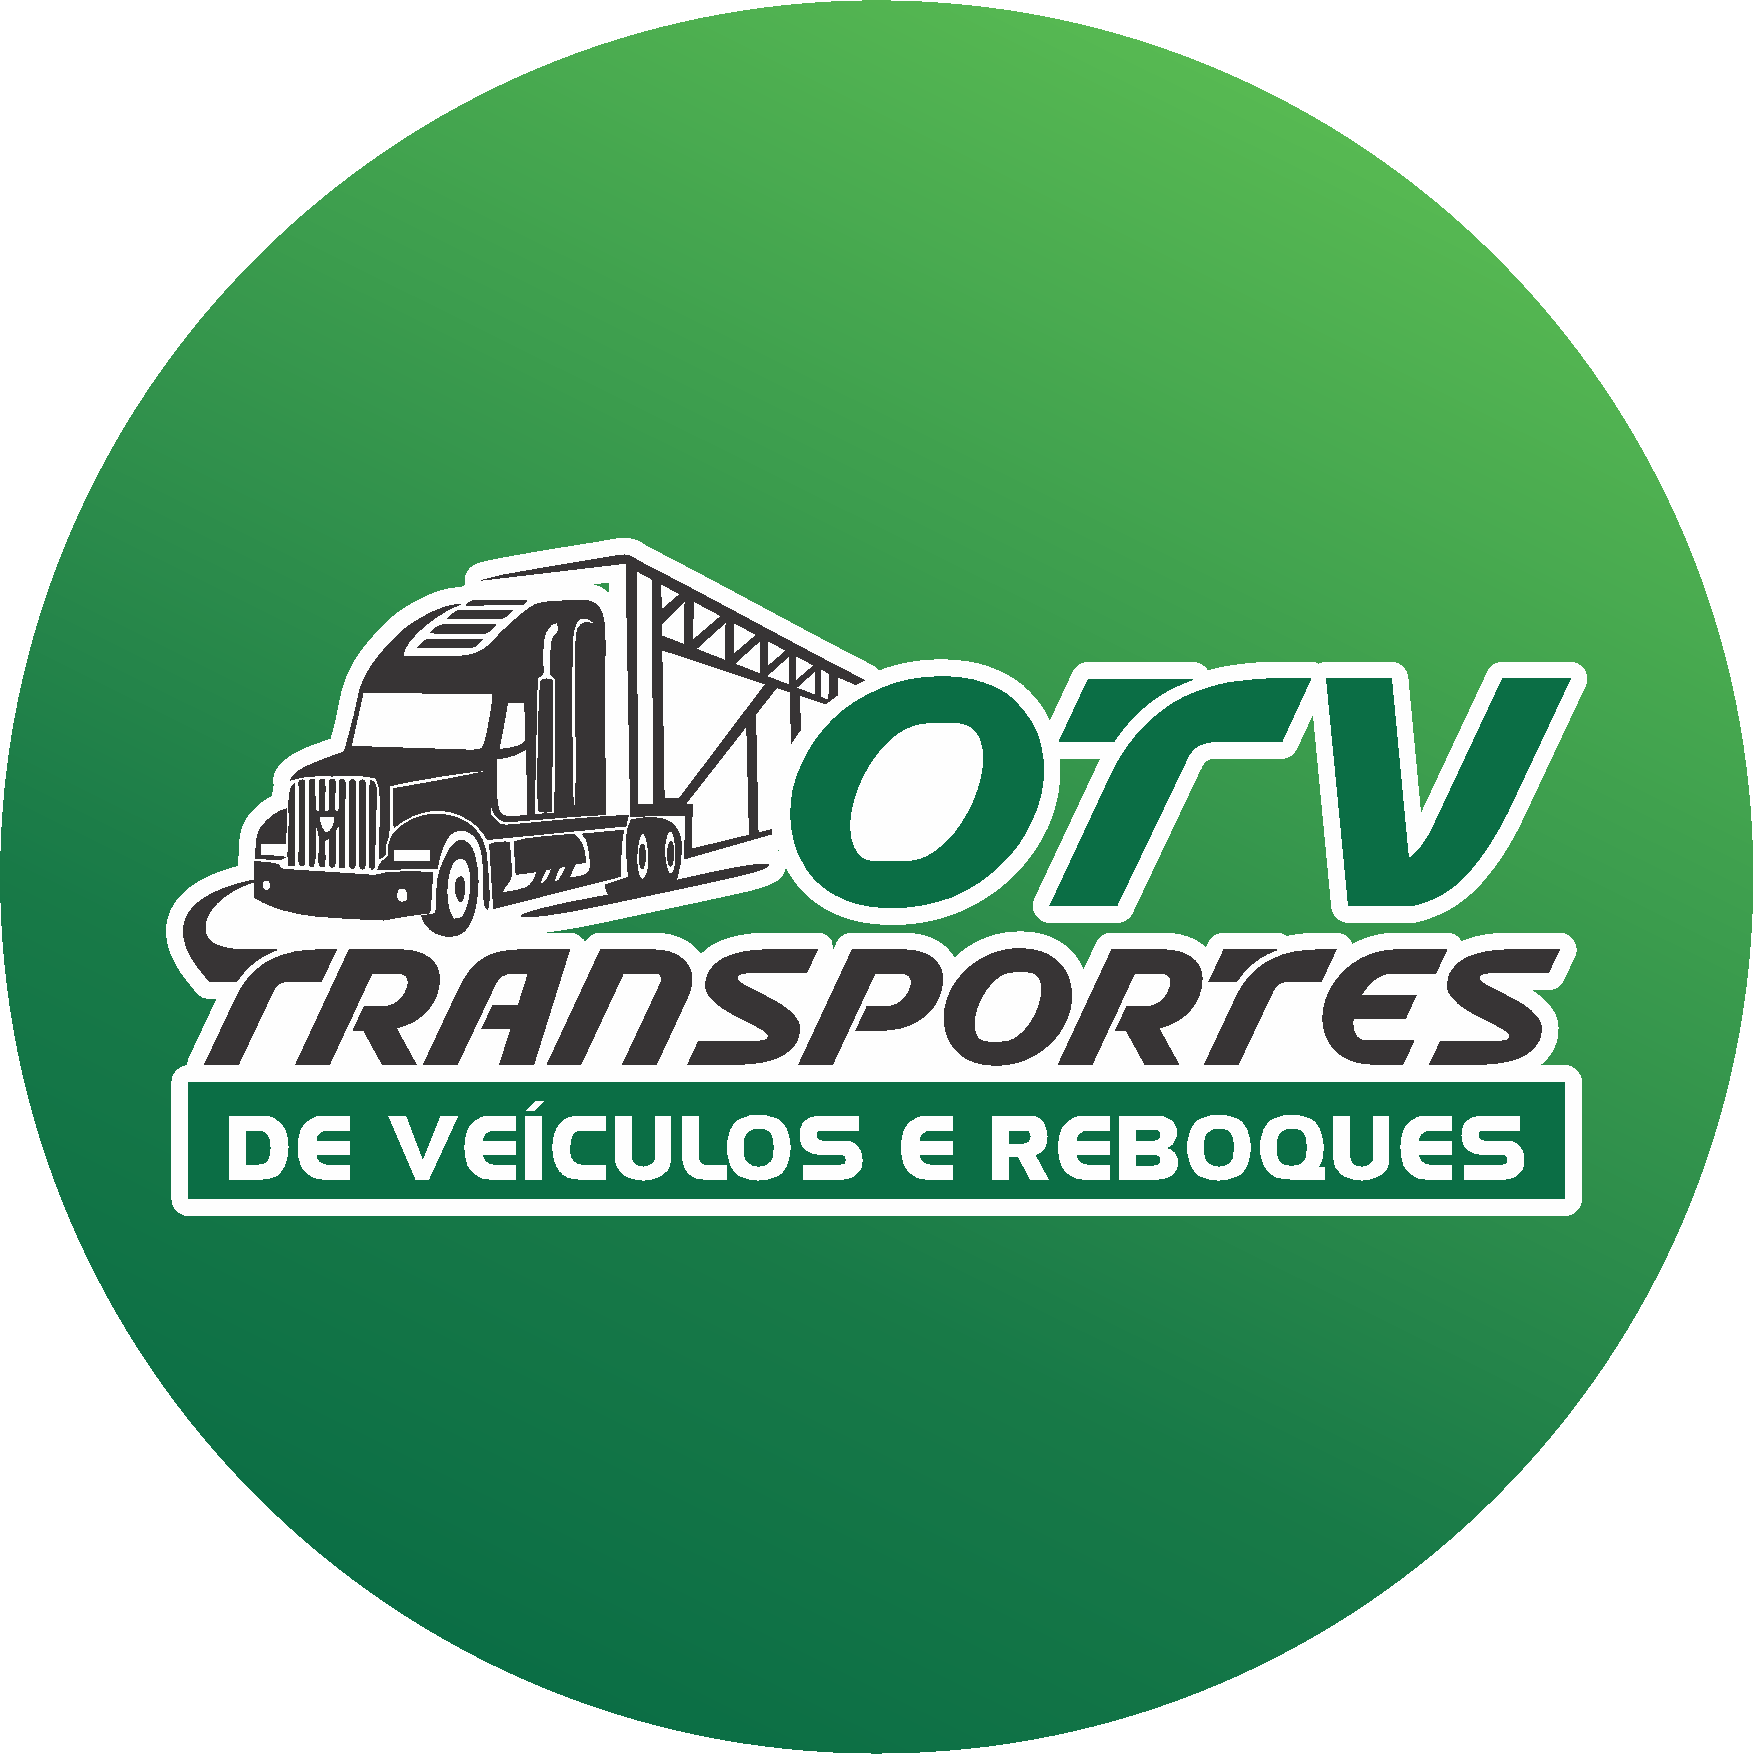 (c) Oliveiratransporte.com.br